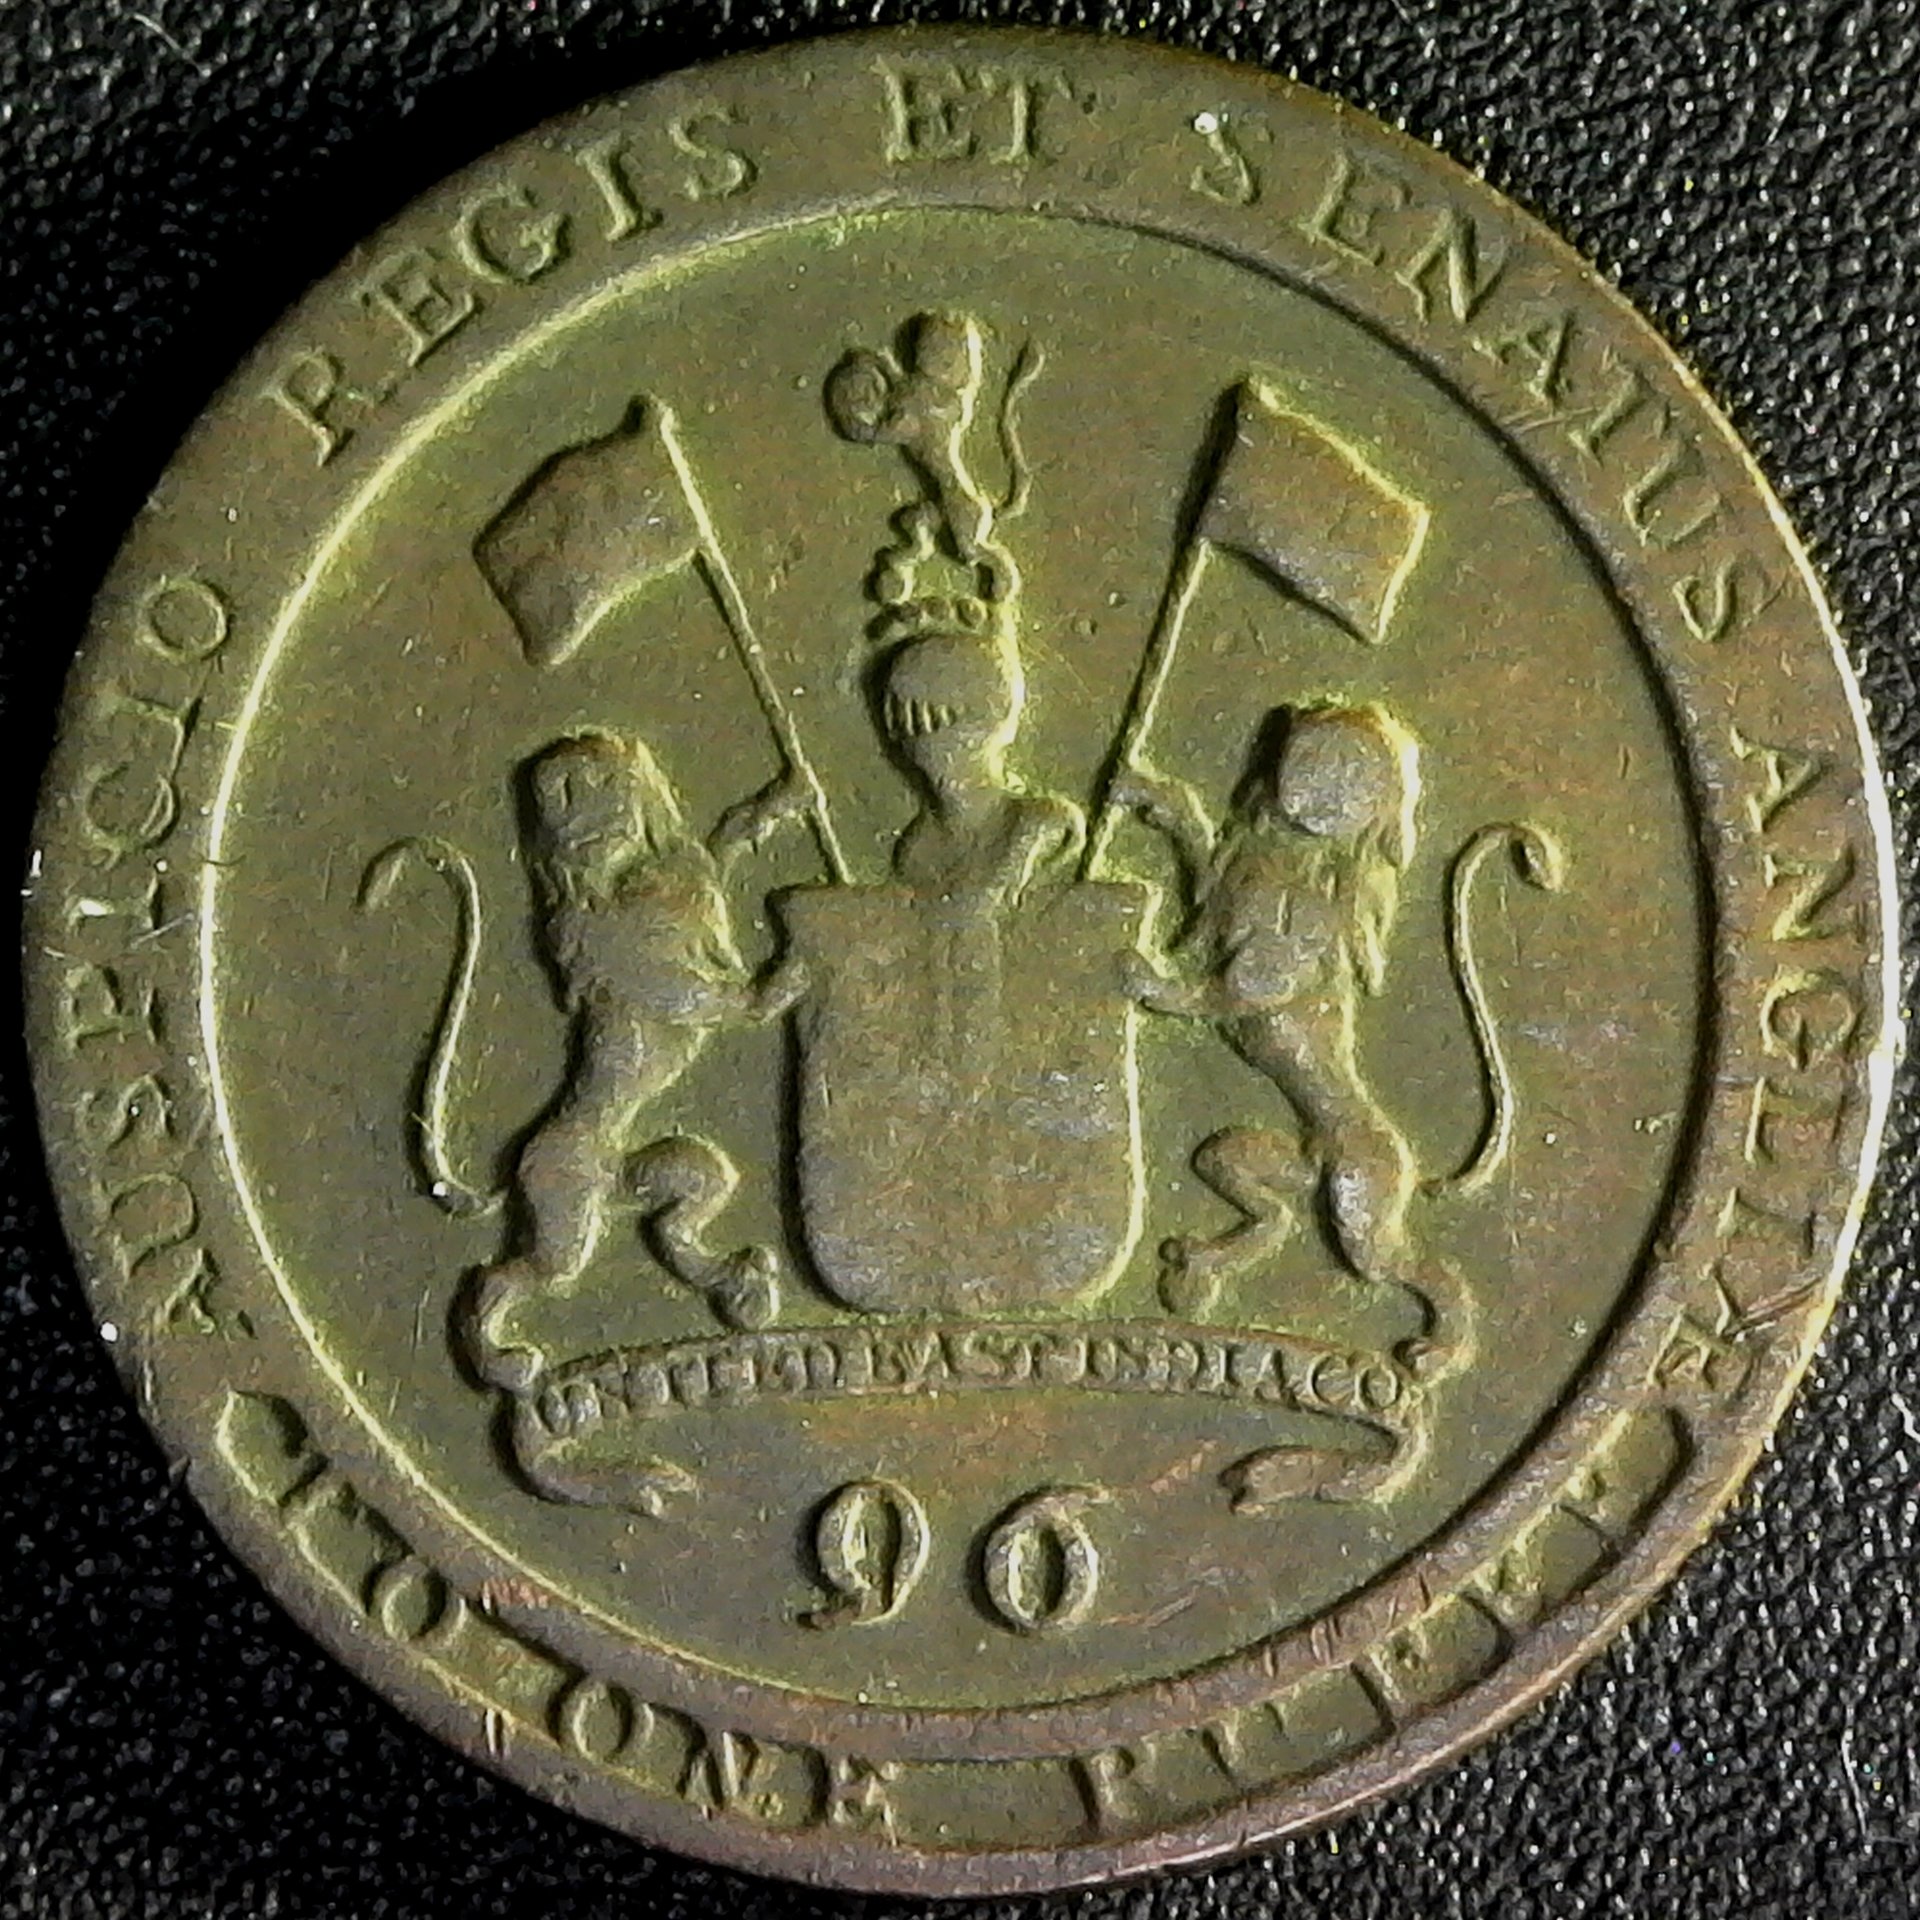 India 1 96 rupee, 1794,United East India Company, Madras Presidency, Soho Mint rev.jpg